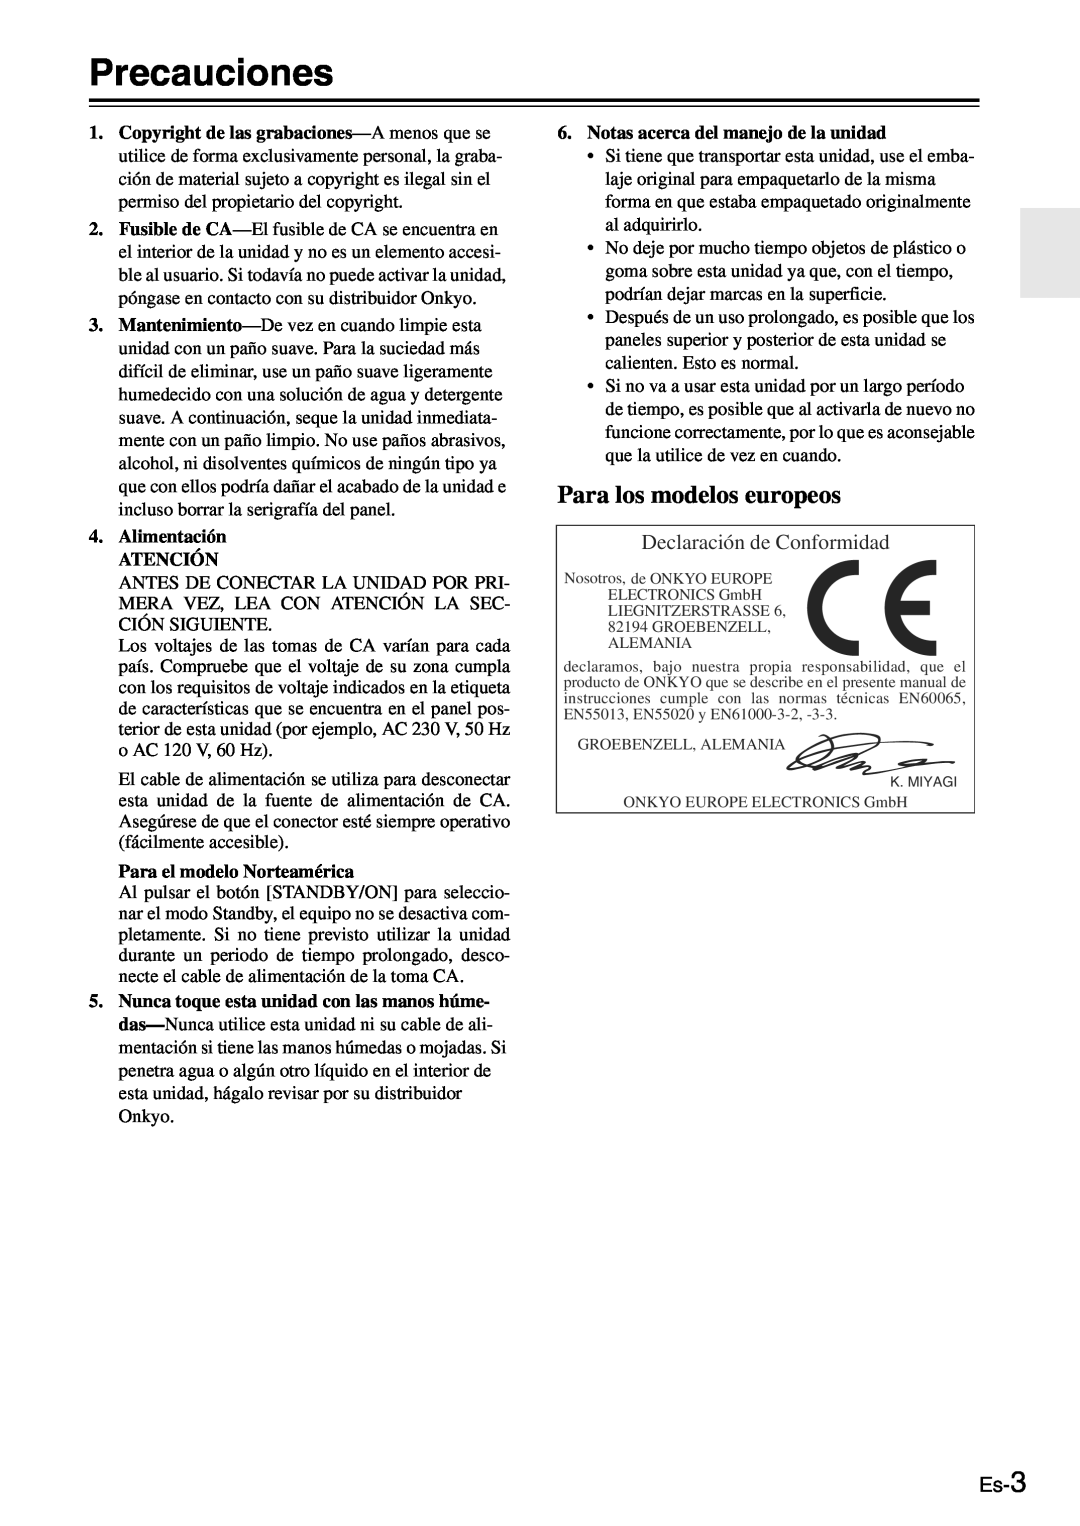 Onkyo TX-SR705 manual Precauciones, Para los modelos europeos, Declaración de Conformidad, Es-3, Alimentación ATENCIÓN 